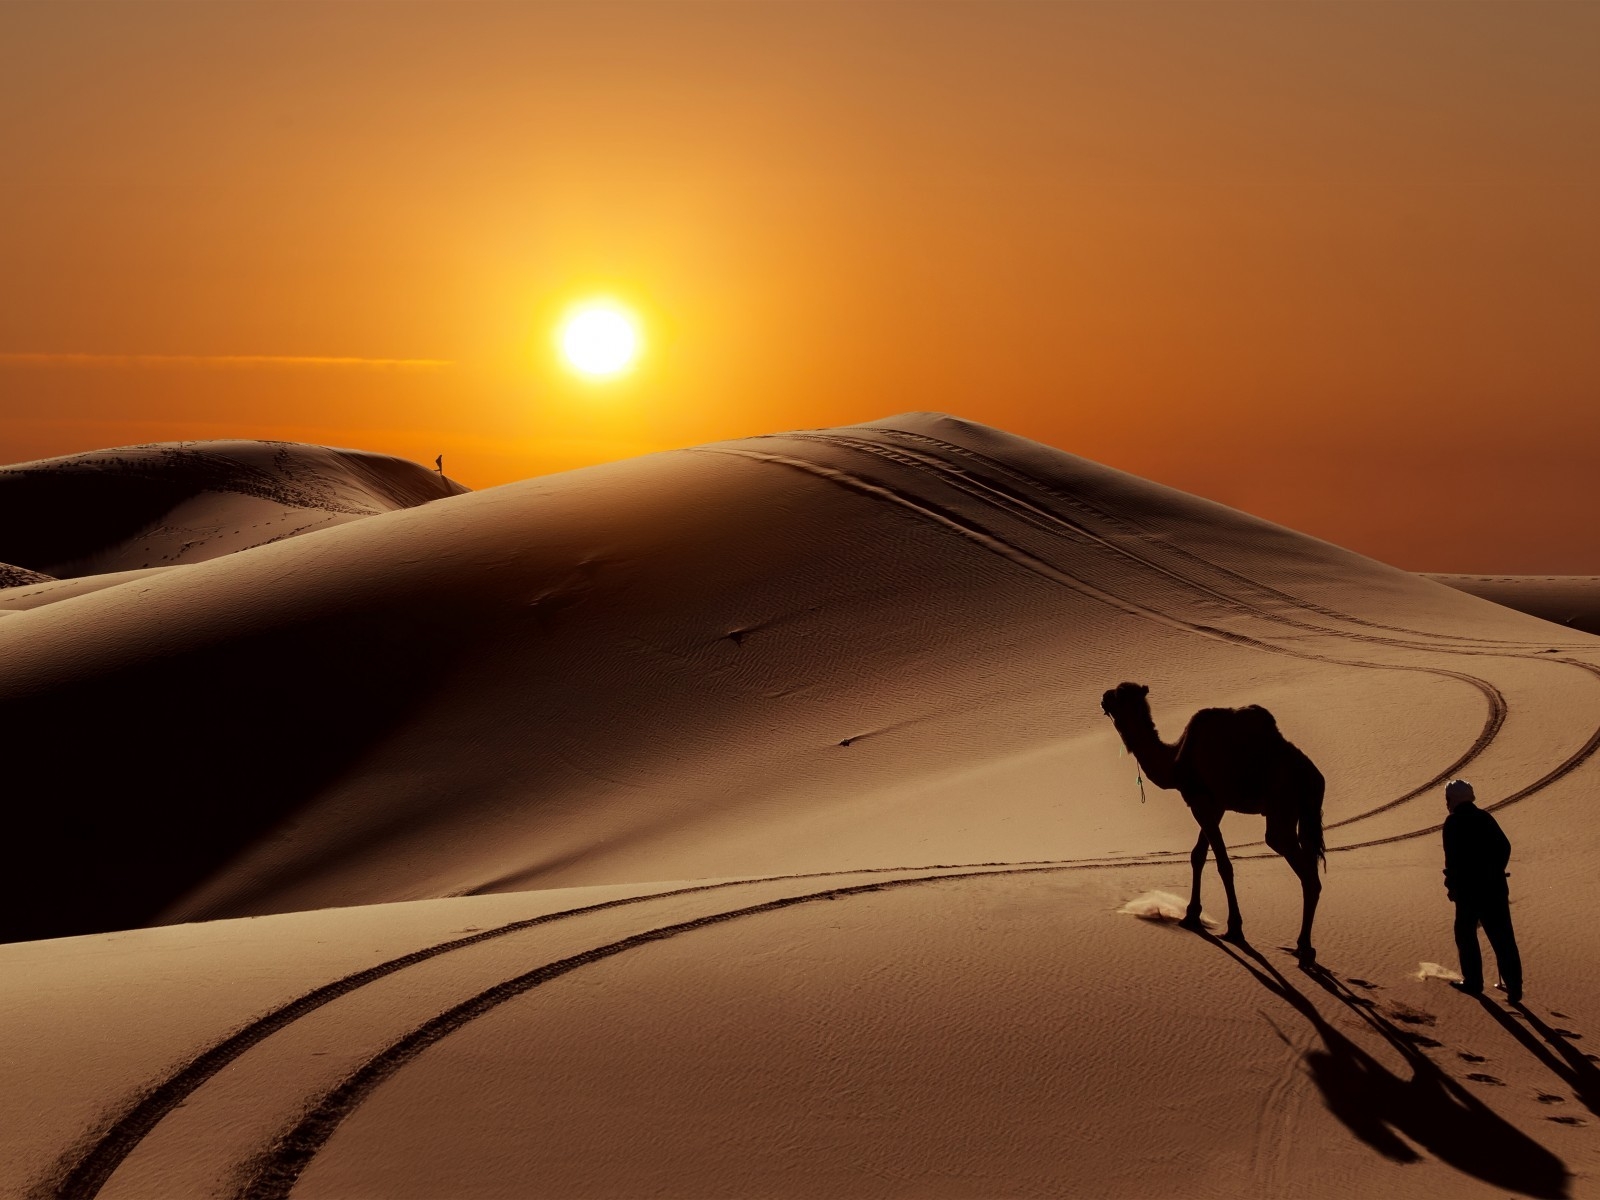 Sunset in Desert for 1600 x 1200 resolution